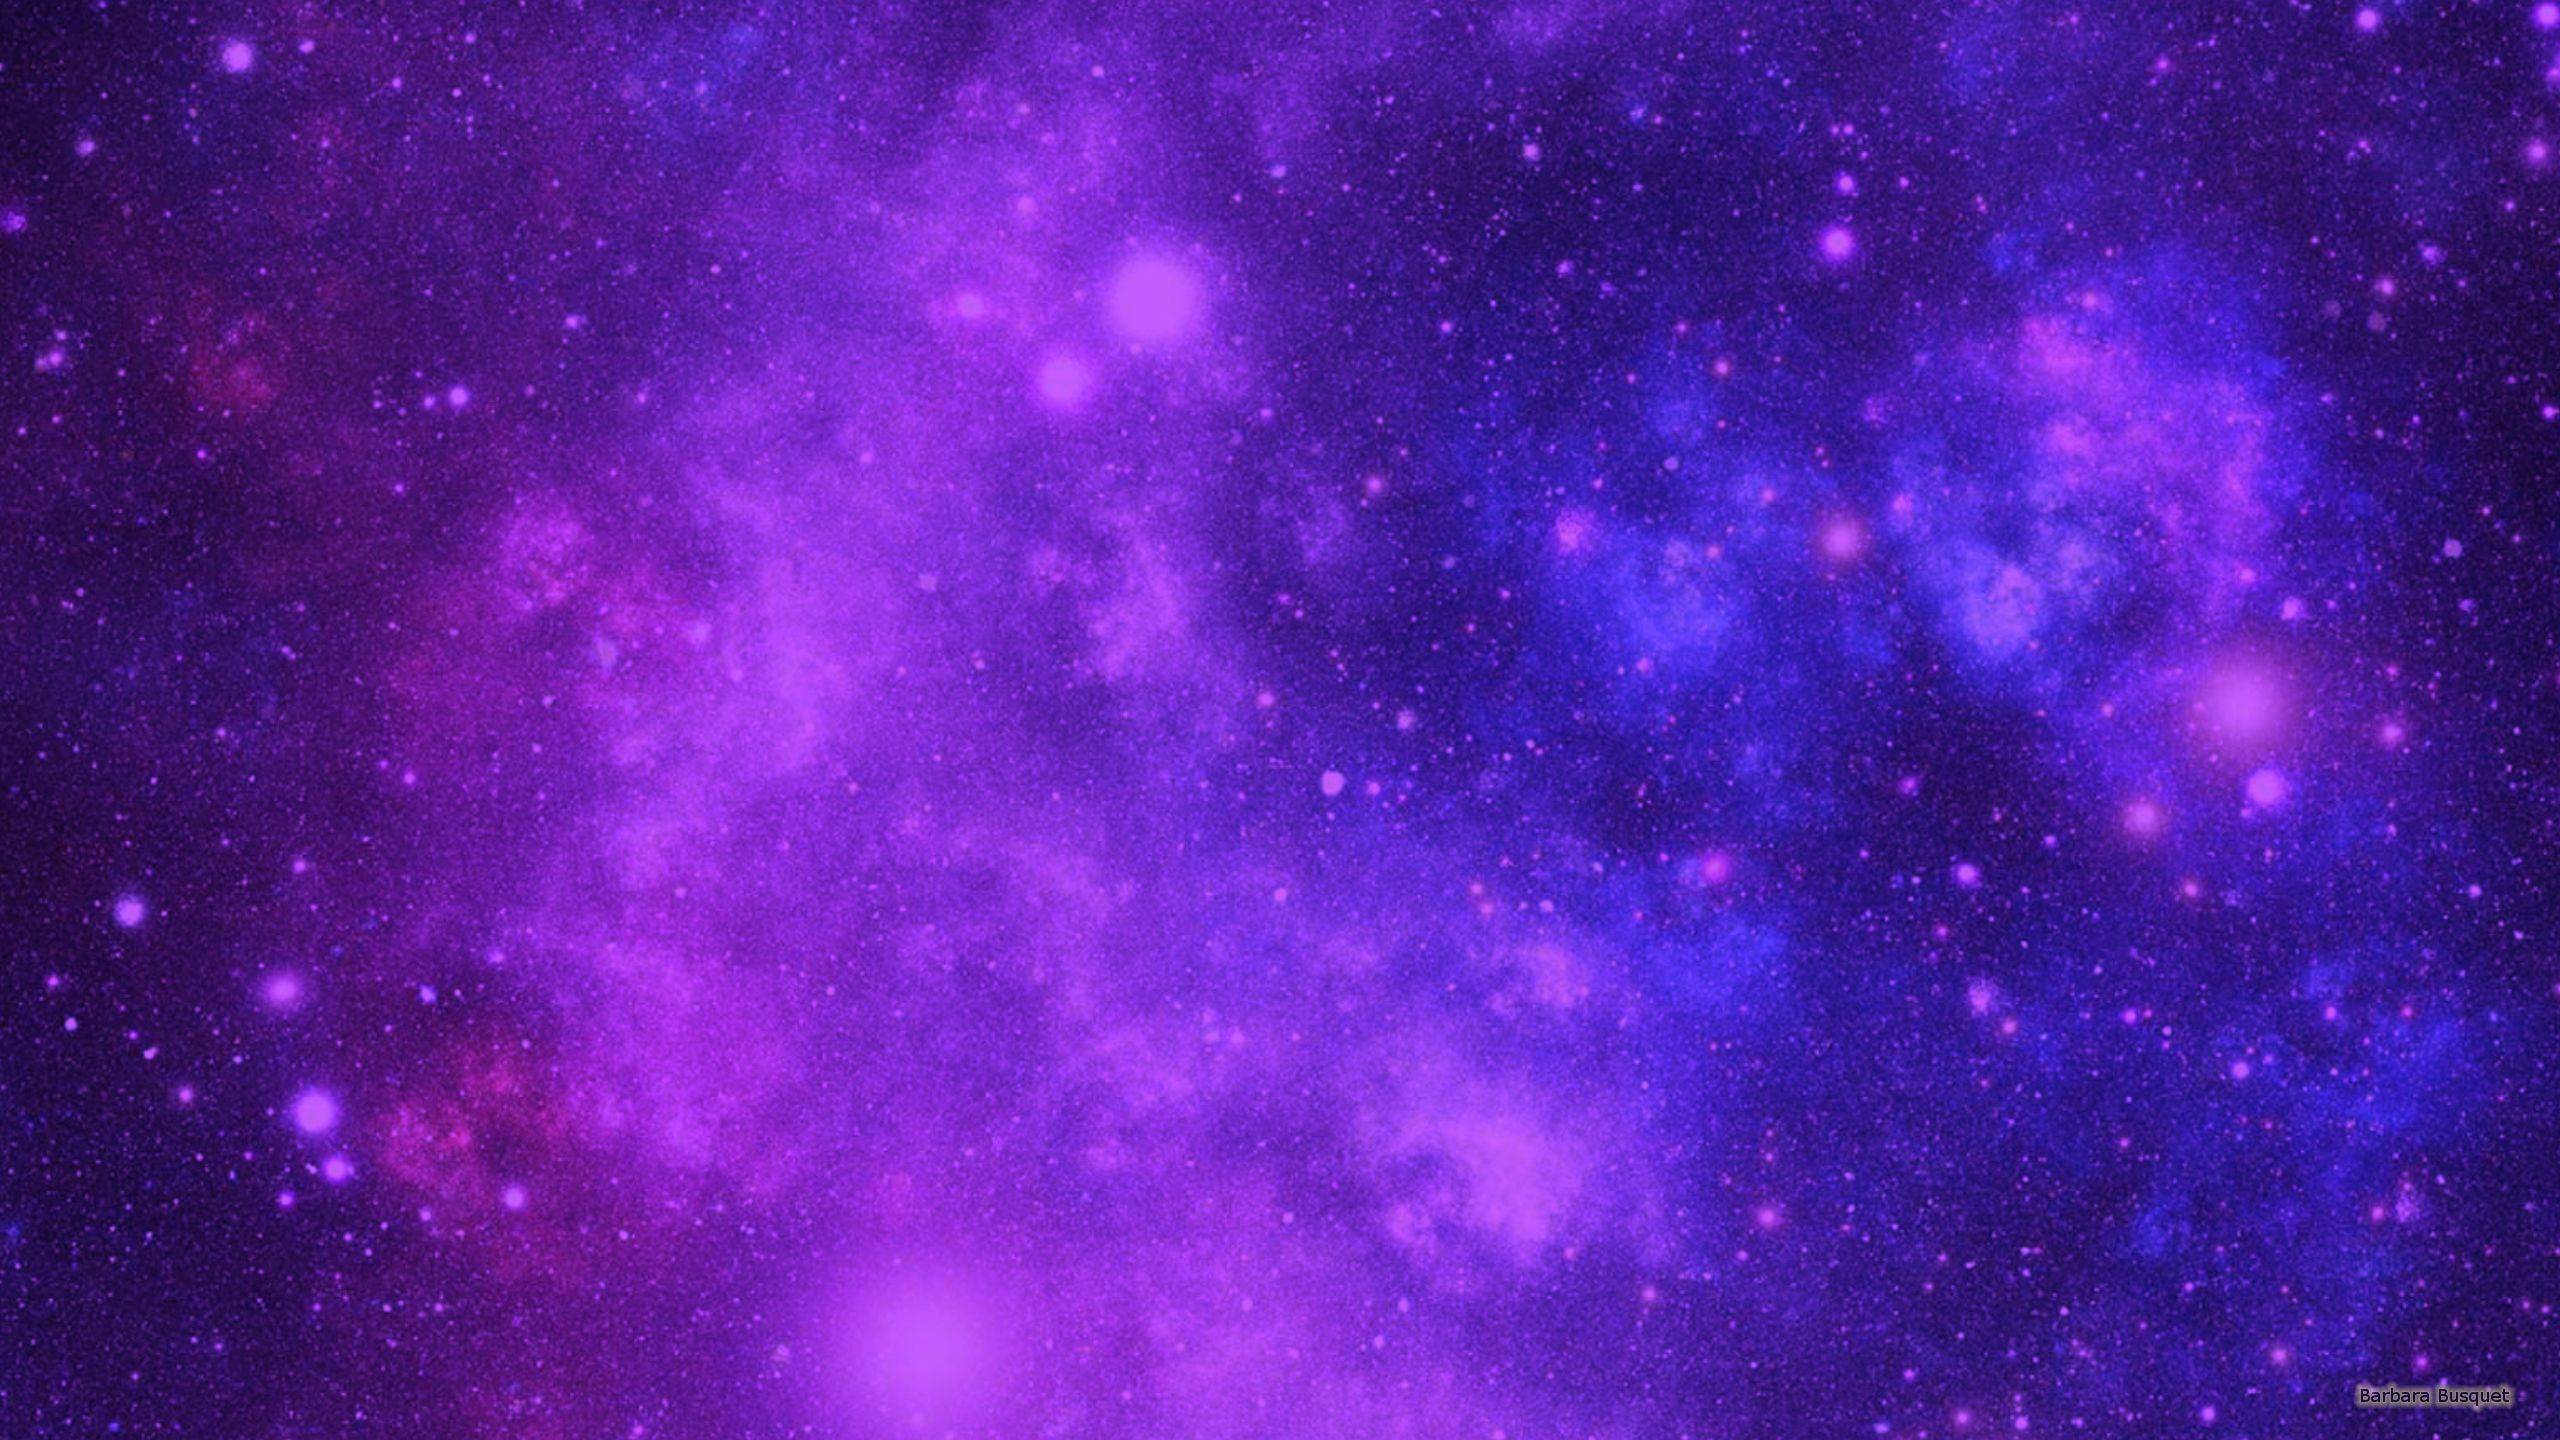 Hình nền thiên hà tím: Hãy khám phá những hình nền thiên hà tím đầy sức mạnh và cảm xúc trên trang web của chúng tôi. Những bức tranh tuyệt đẹp này sẽ khiến bạn ngỡ ngàng và đưa bạn vào một thế giới đầy khám phá và kì vĩ. Đừng bỏ lỡ cơ hội thưởng thức những hình nền thiên hà tím đồng nghiệp của bạn đang khen ngợi!